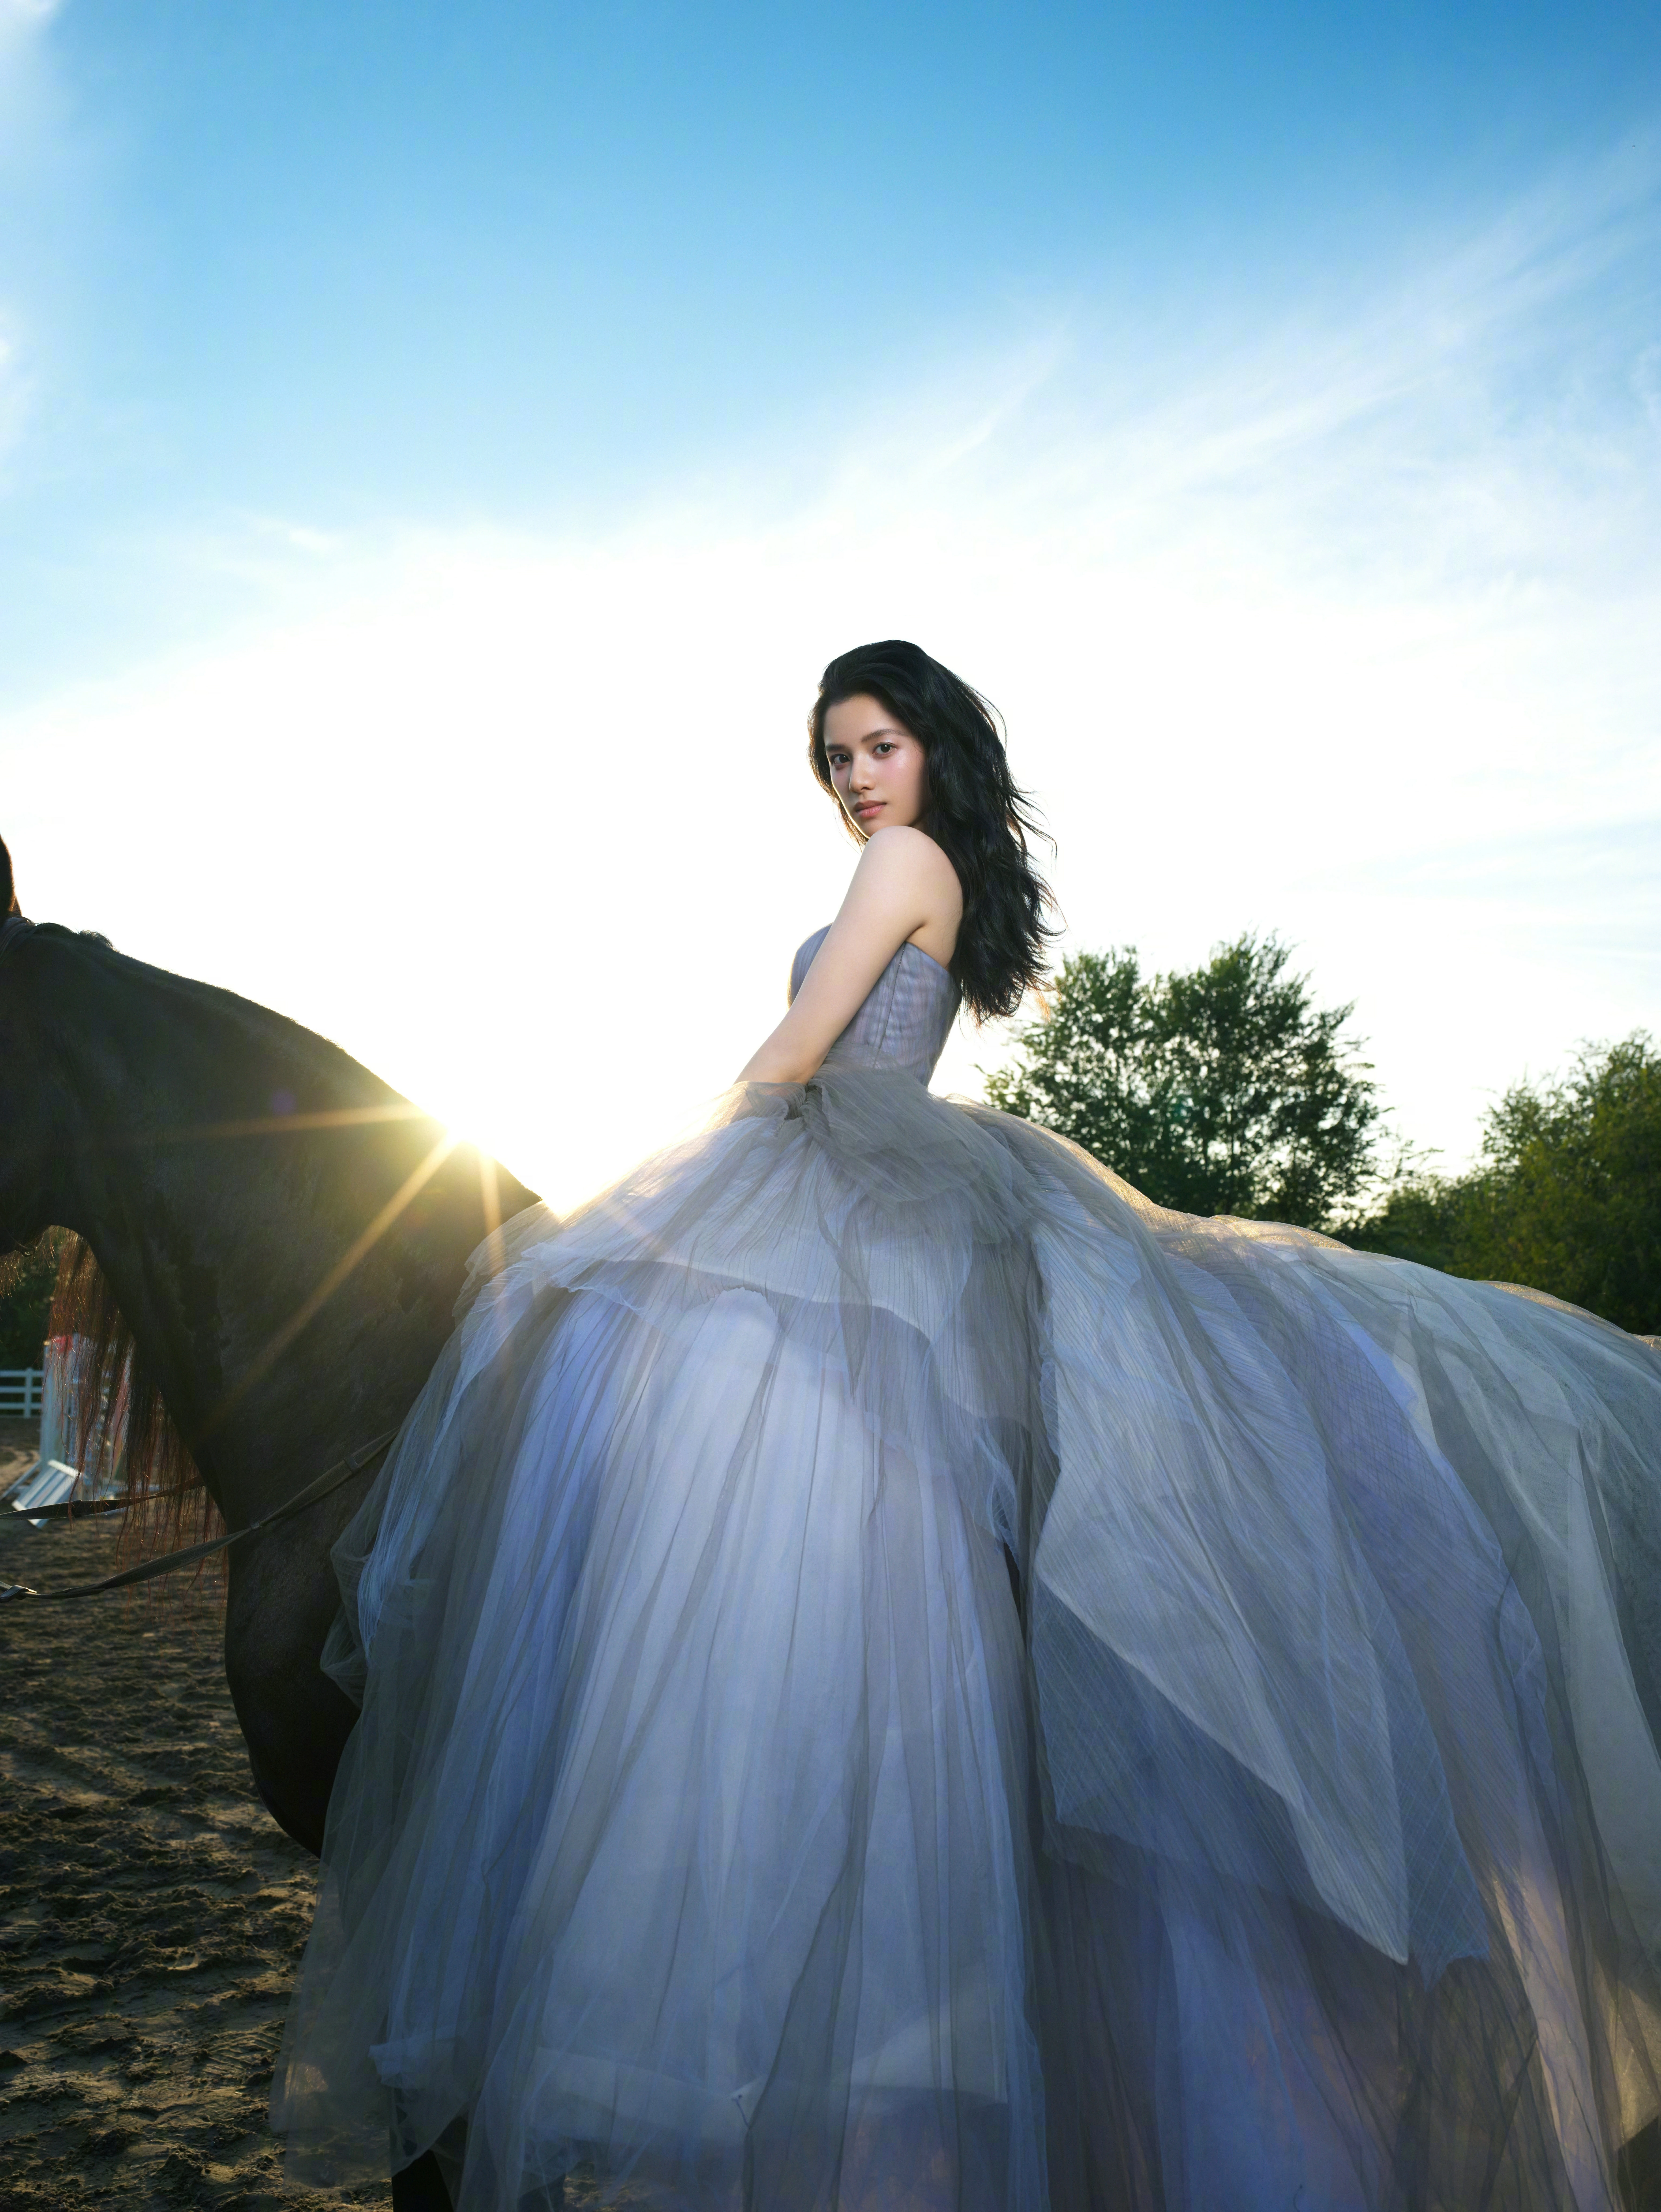 张婧仪穿蓝色公主裙显高贵气质 骑马姿势优雅侧颜迷人,10